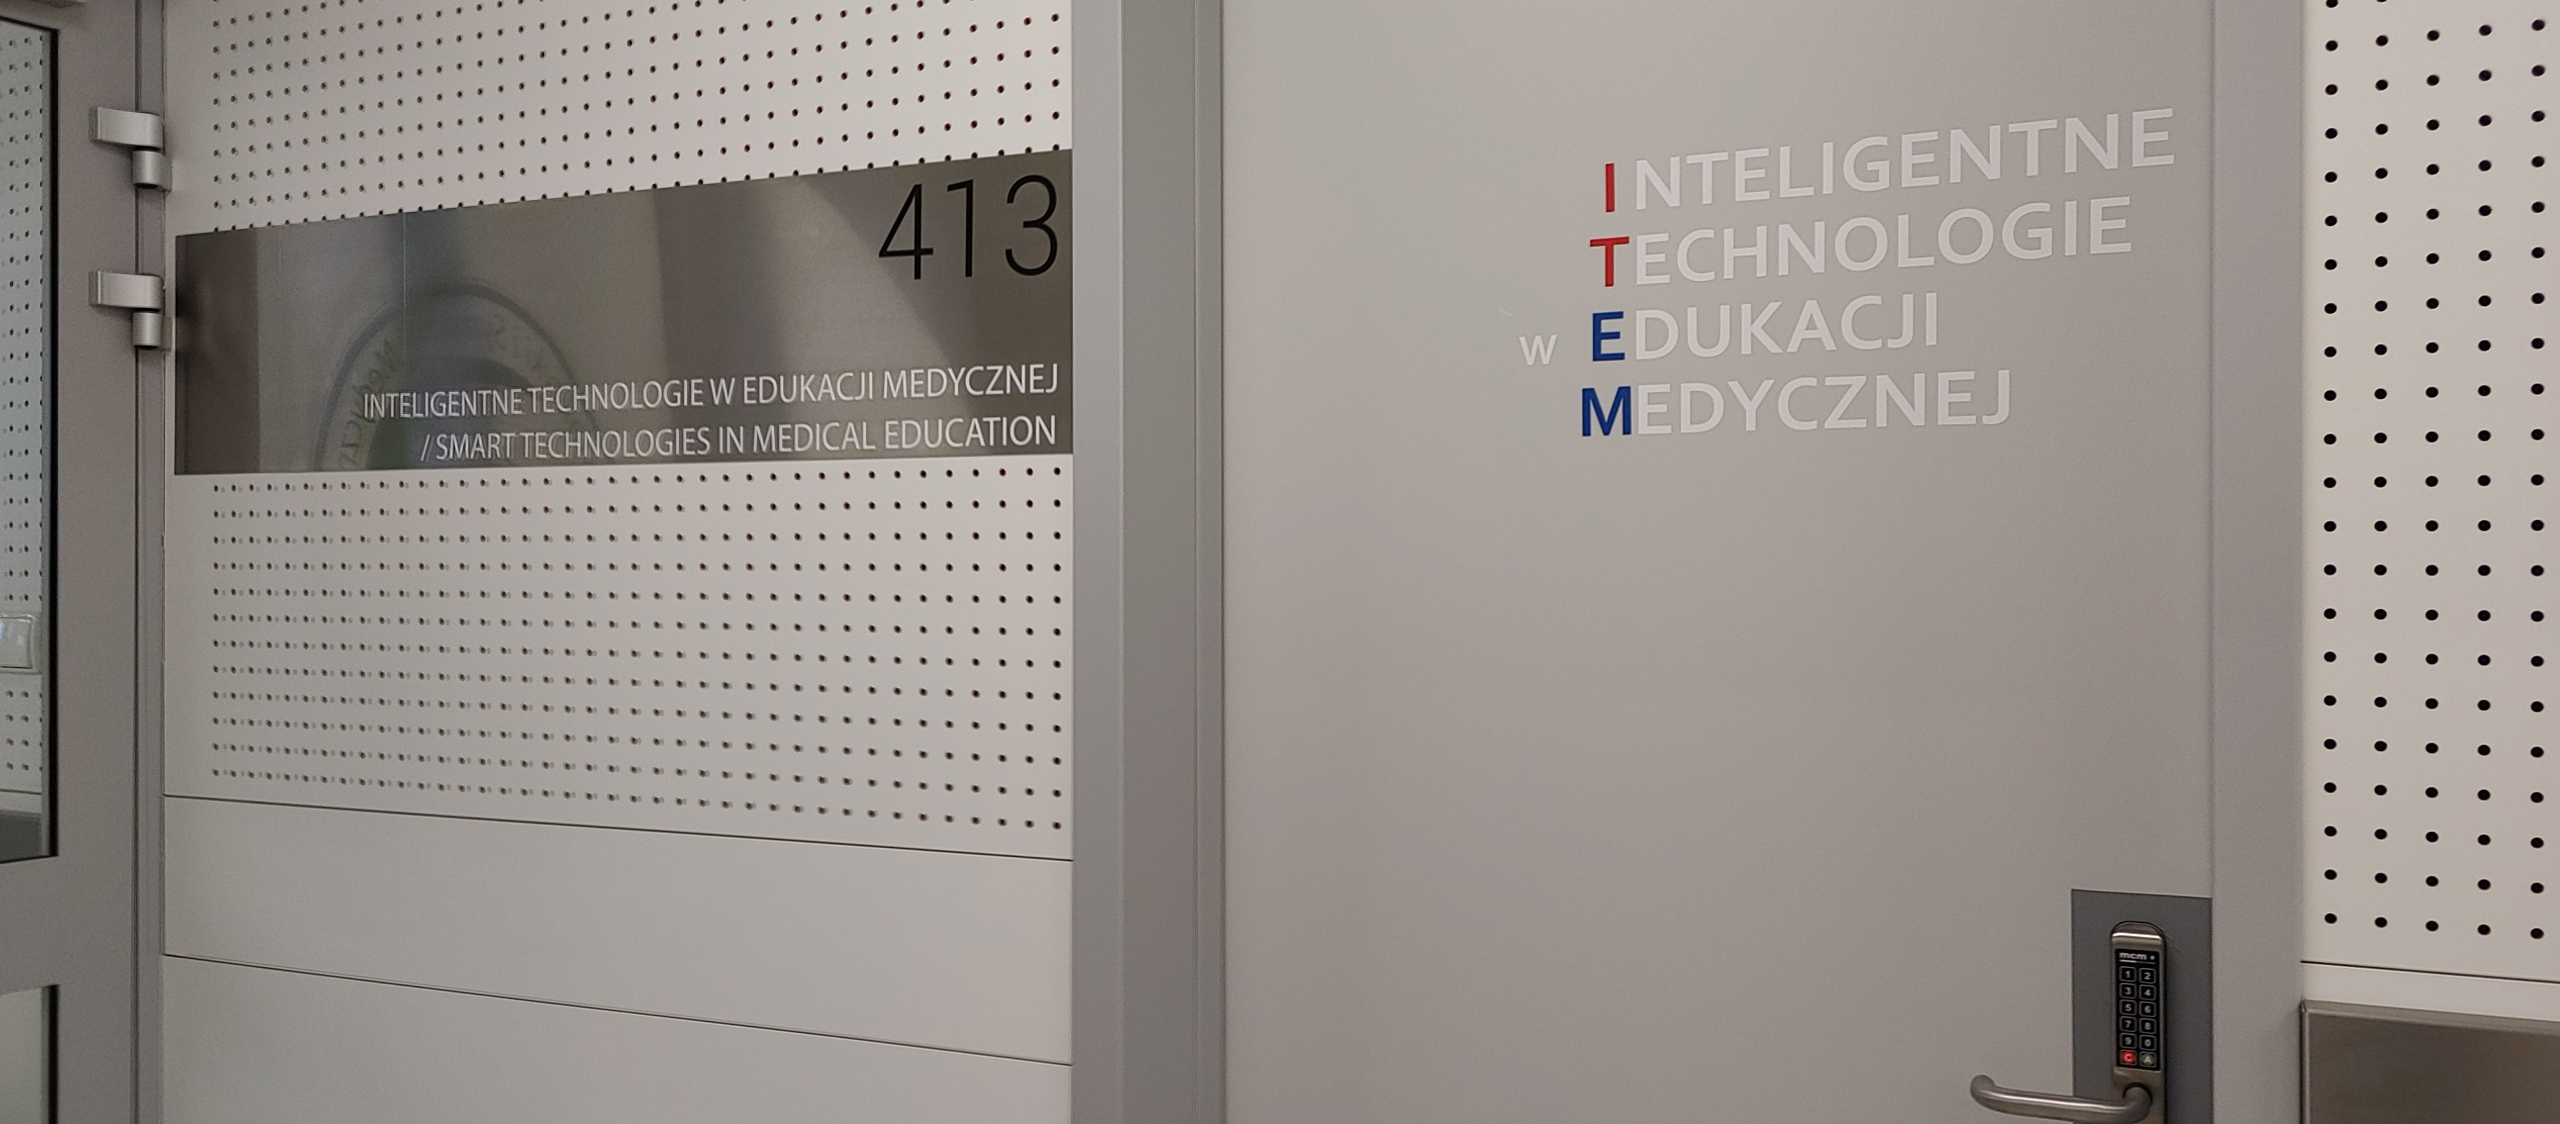 Zdjęcie przedstawia drzwi do pokoju 413 w Centrum Symulacji Medycznej. Pokój 413 jest siedzibą zespołu ITEM - Inteligentnych Technologii w Edukacji Medycznej.